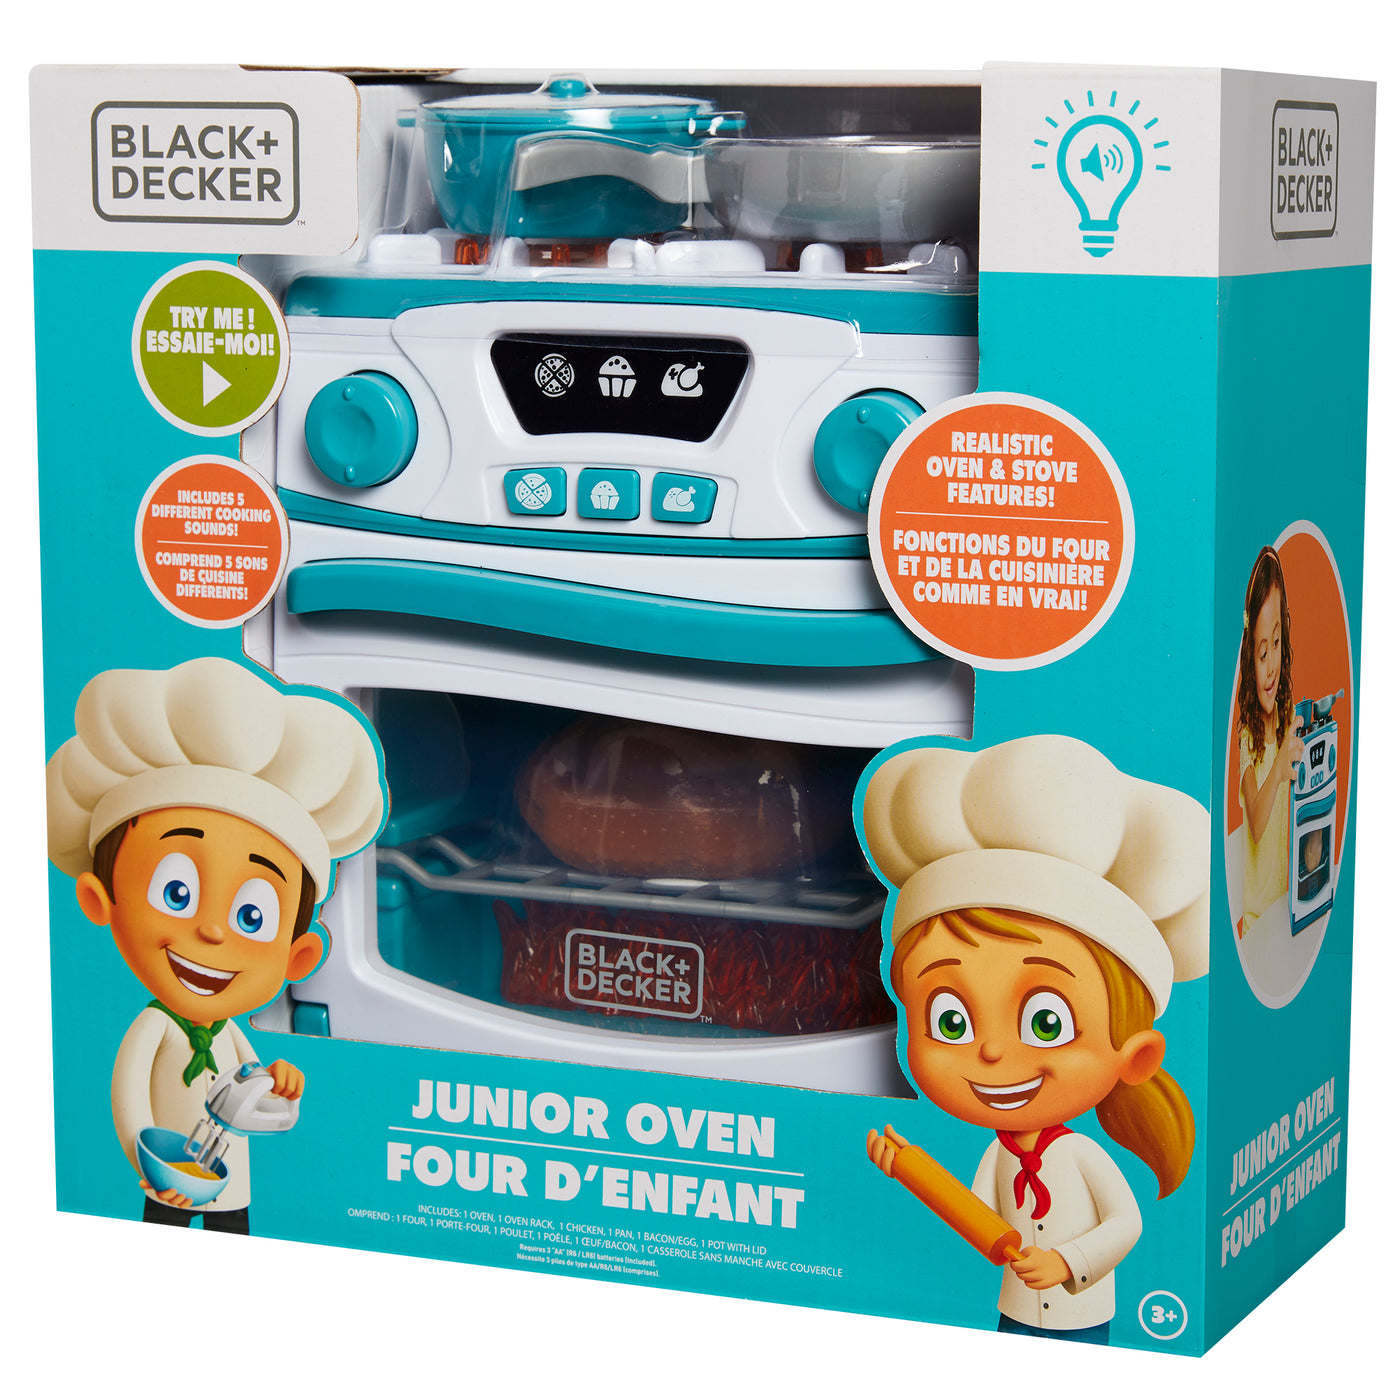 Black + Decker Junior Oven and Stove – JAKKSstore